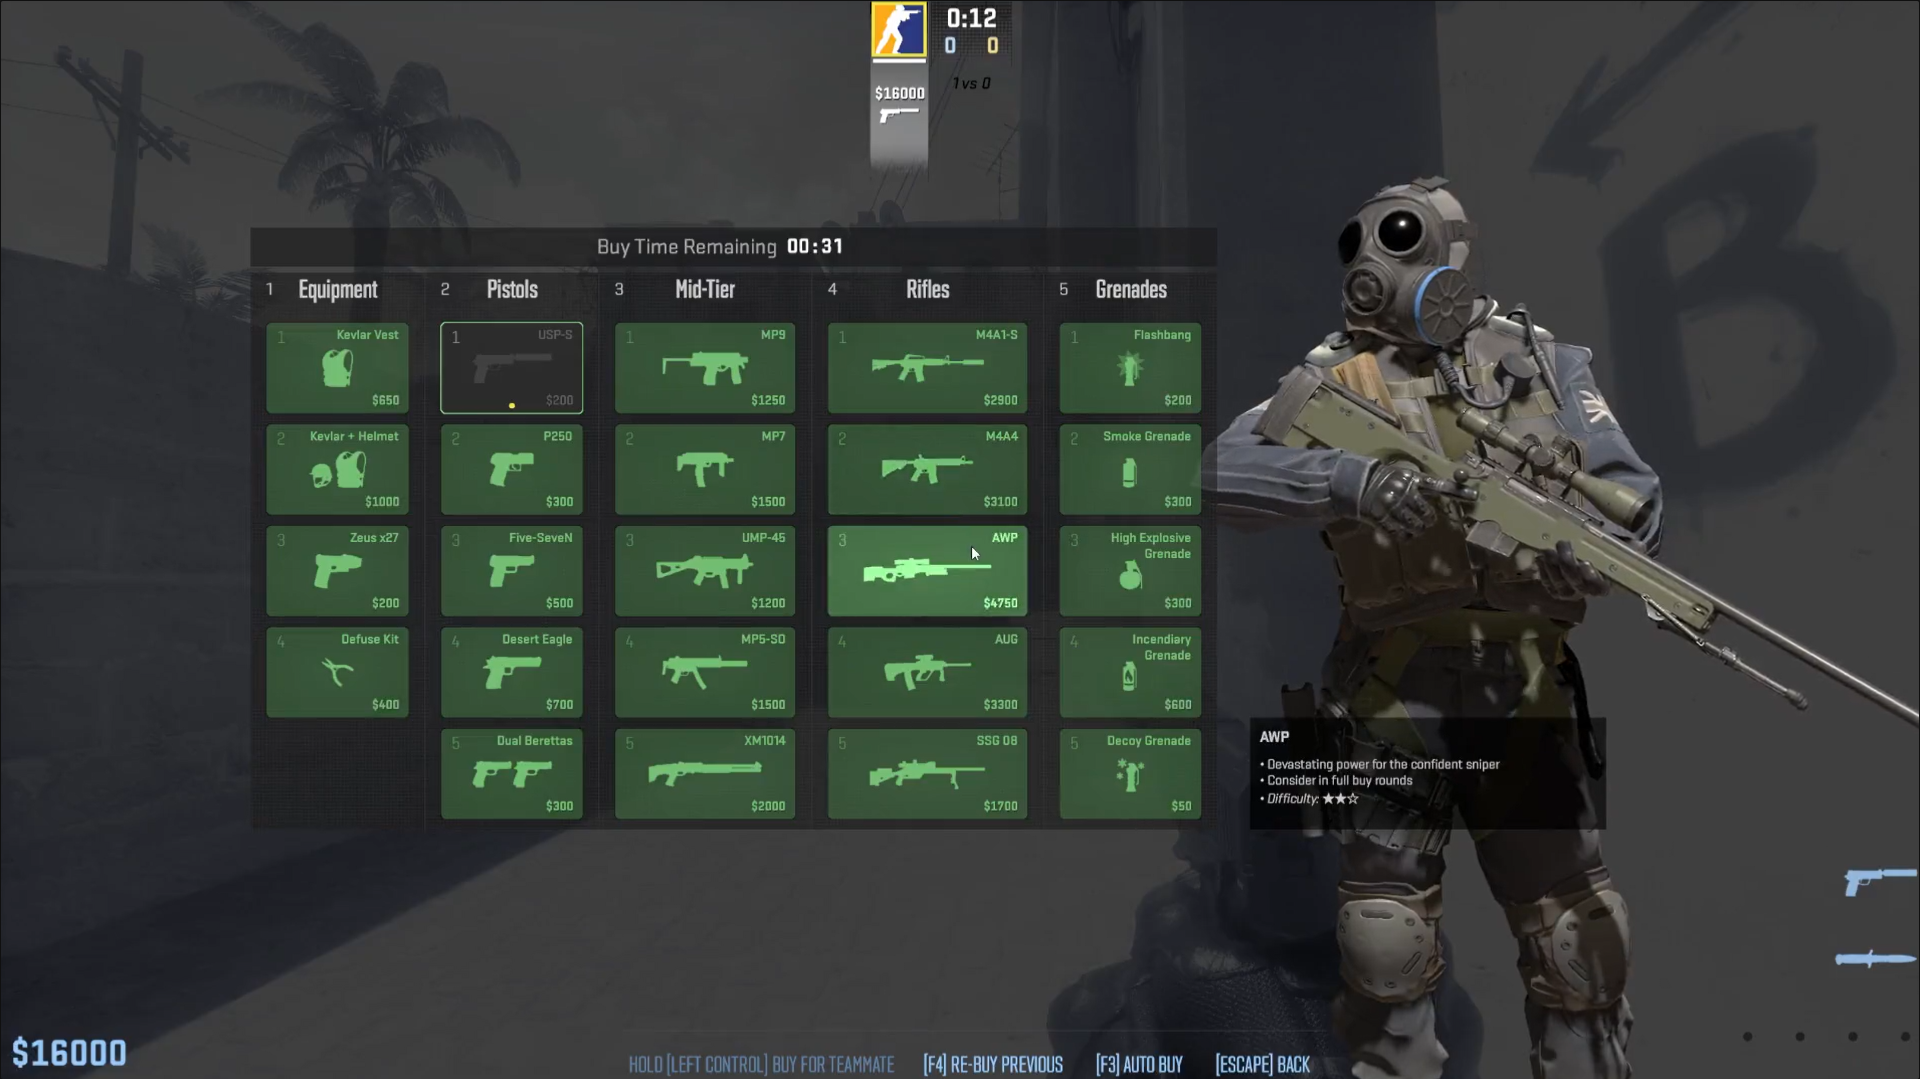 Por que uma arma do jogo Counter-Strike pode valer R$ 700 mil